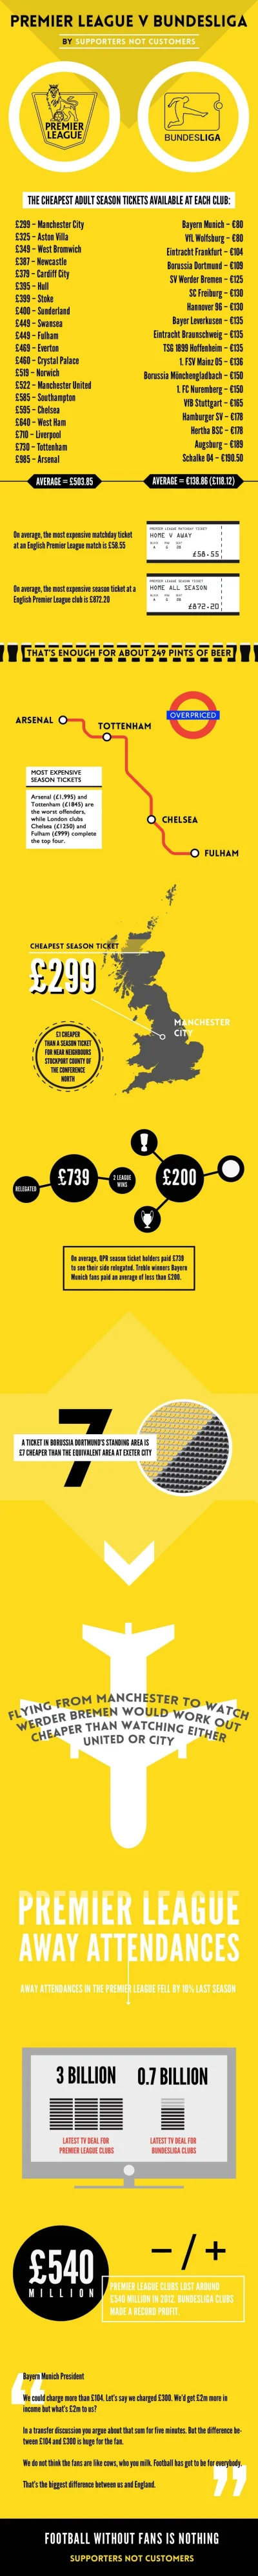 misiekmr - Ciekawa infografika na temat cen biletów w Bundeslidze i w Premier League ...